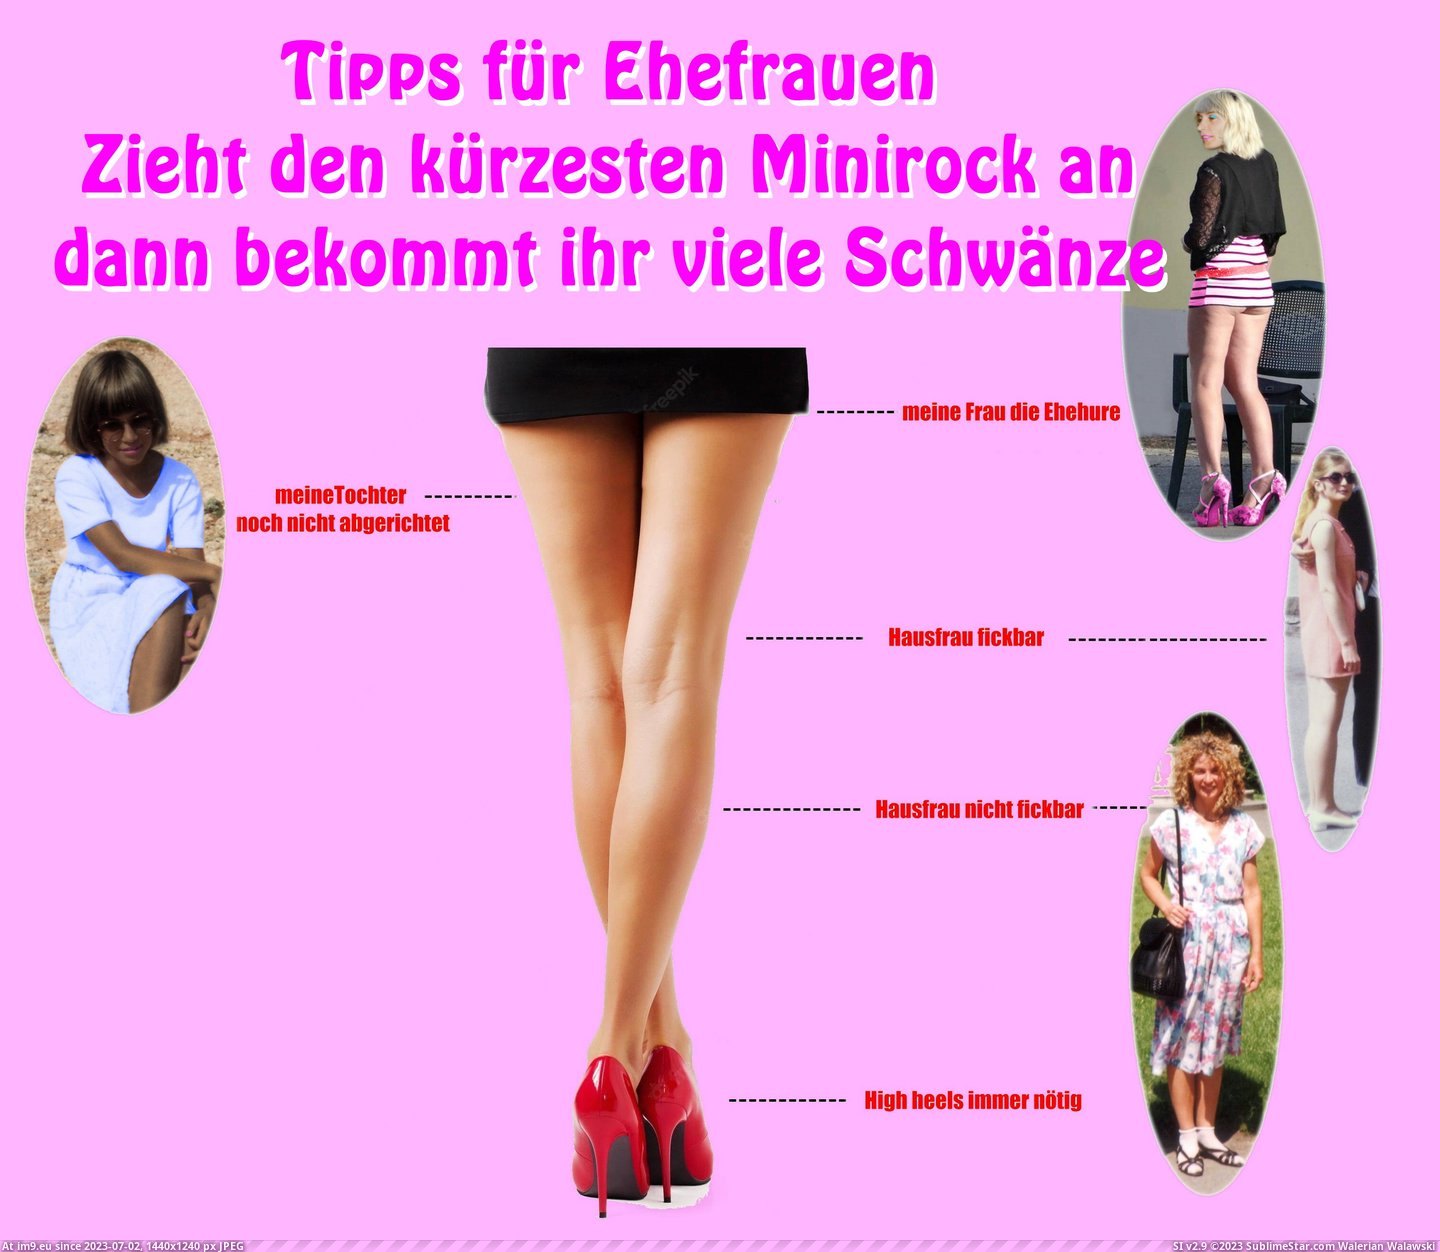 #Ehehure #Fickbar #Tipps #Andraslut Tipps für Ehefrauen Pic. (Image of album Instant Upload))